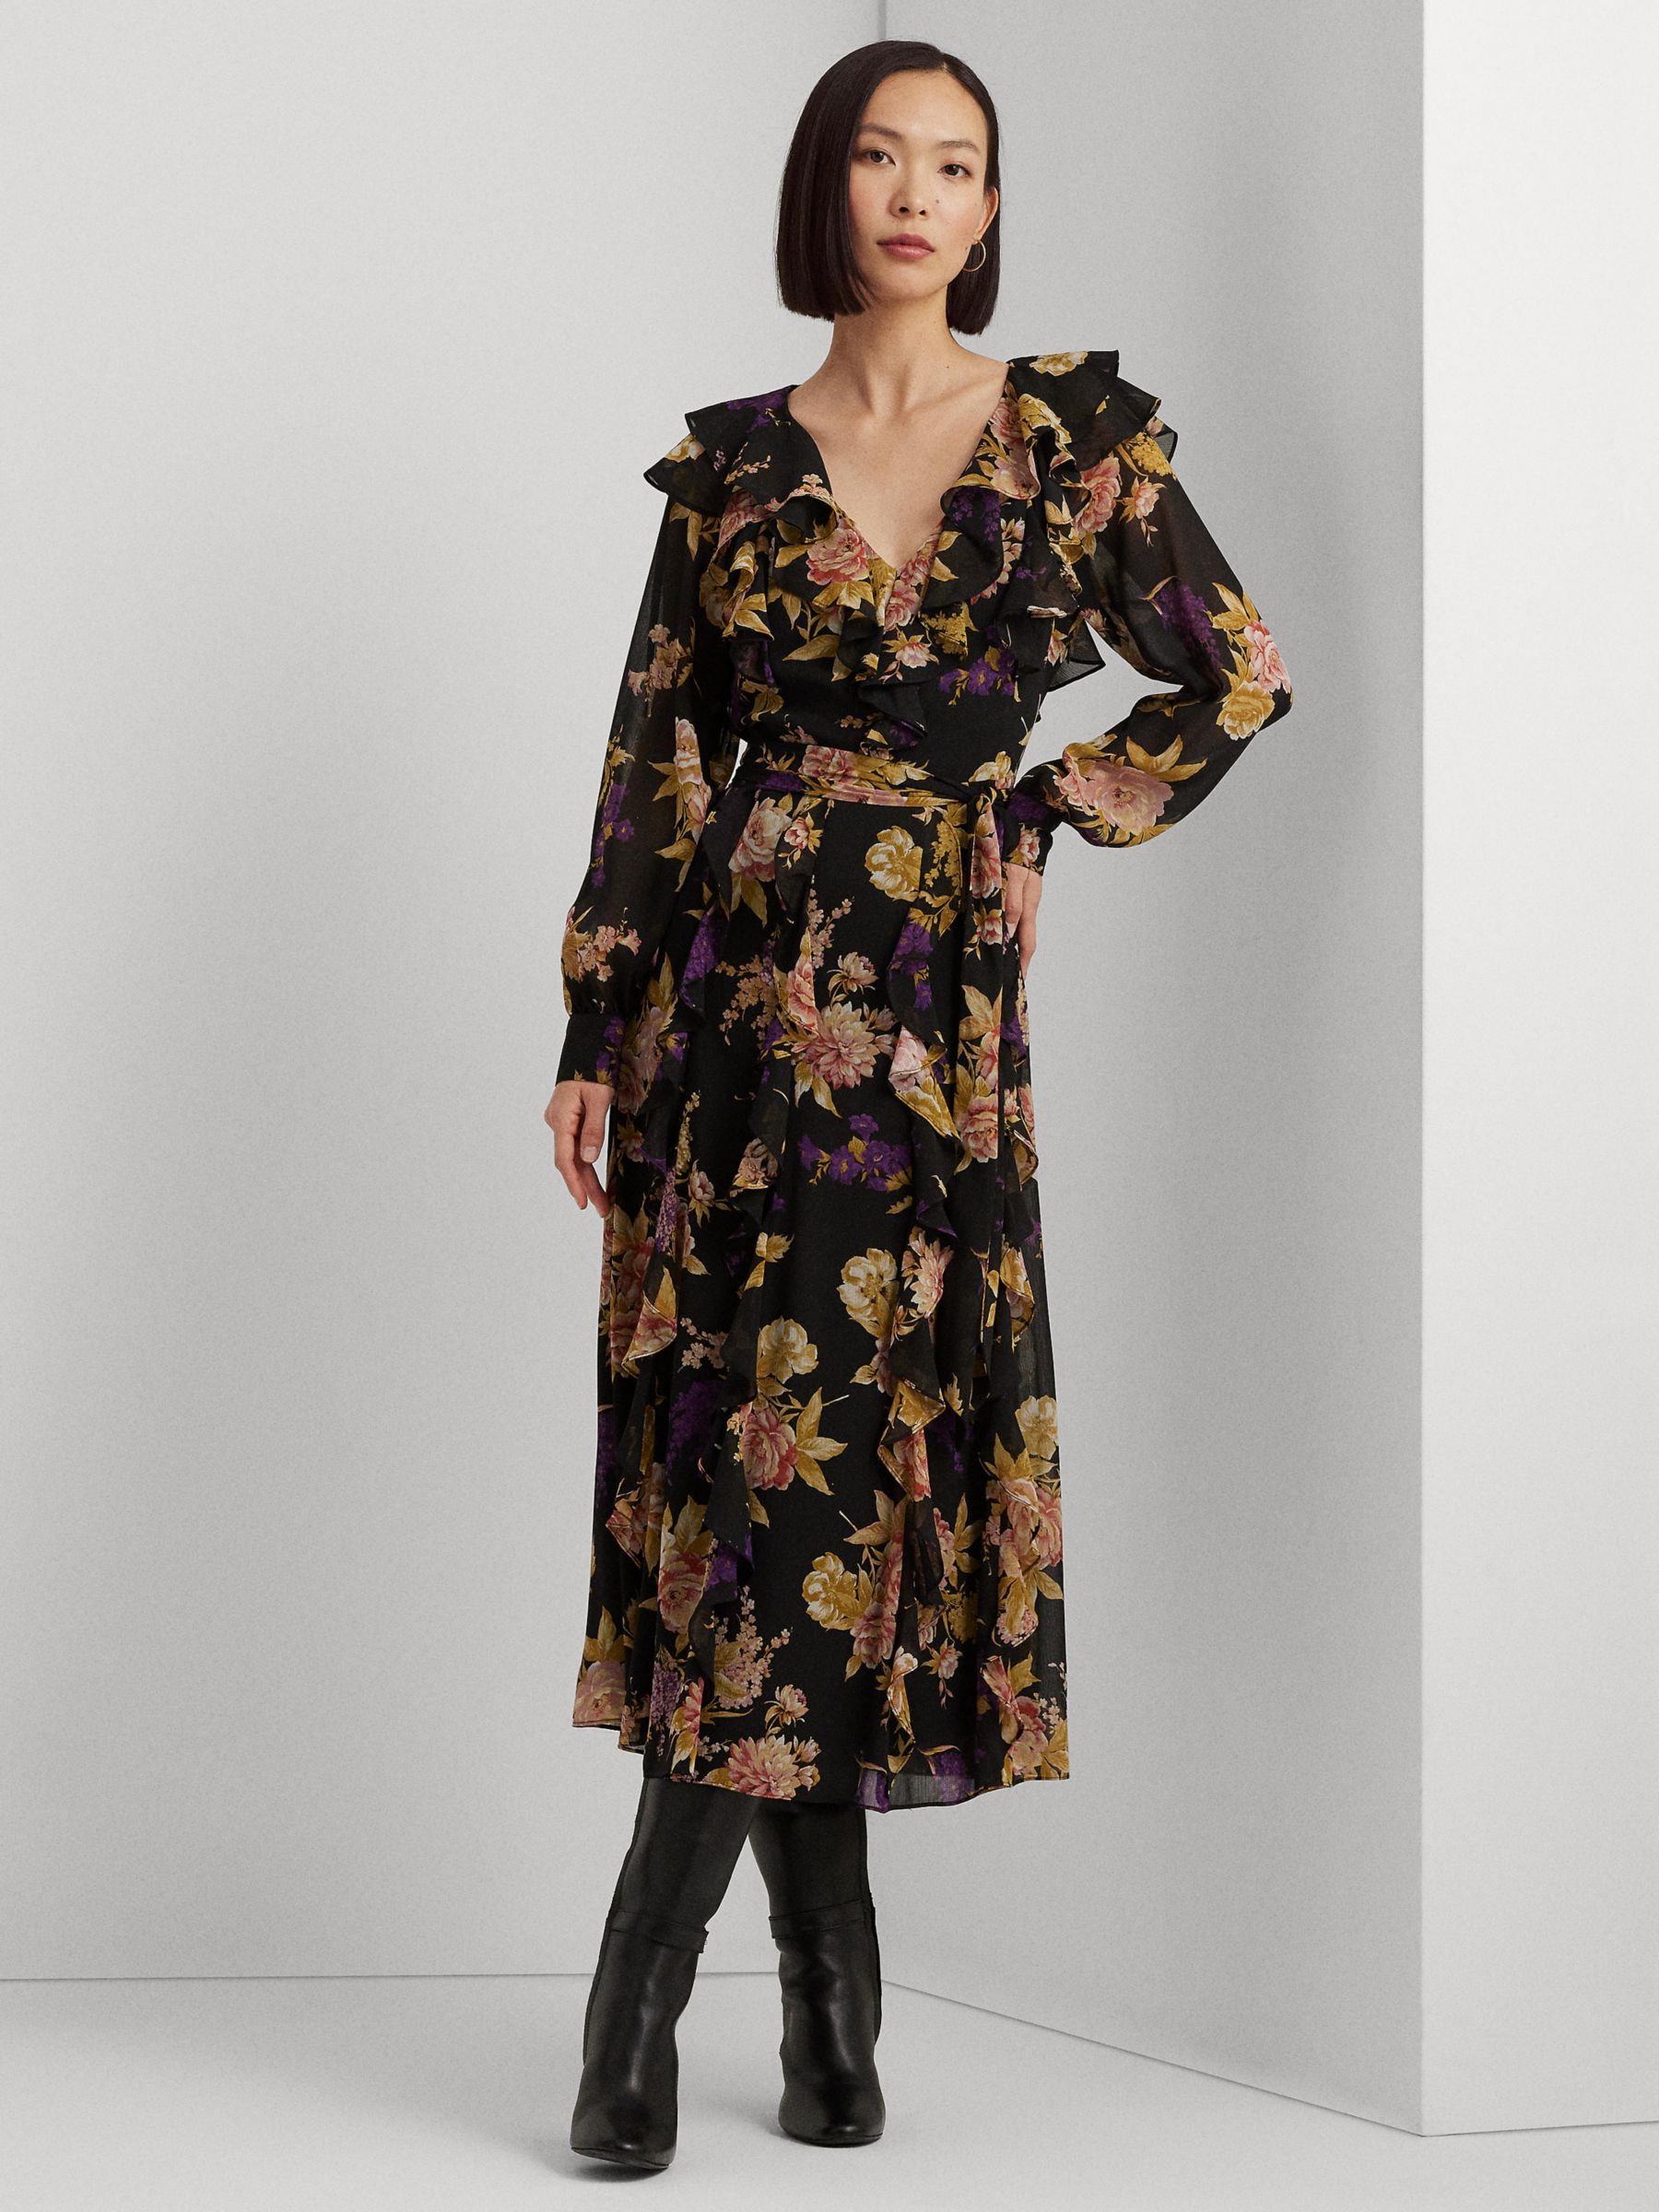 Lauren Ralph Lauren Kesia Floral Dress, Black/Tan/Multi